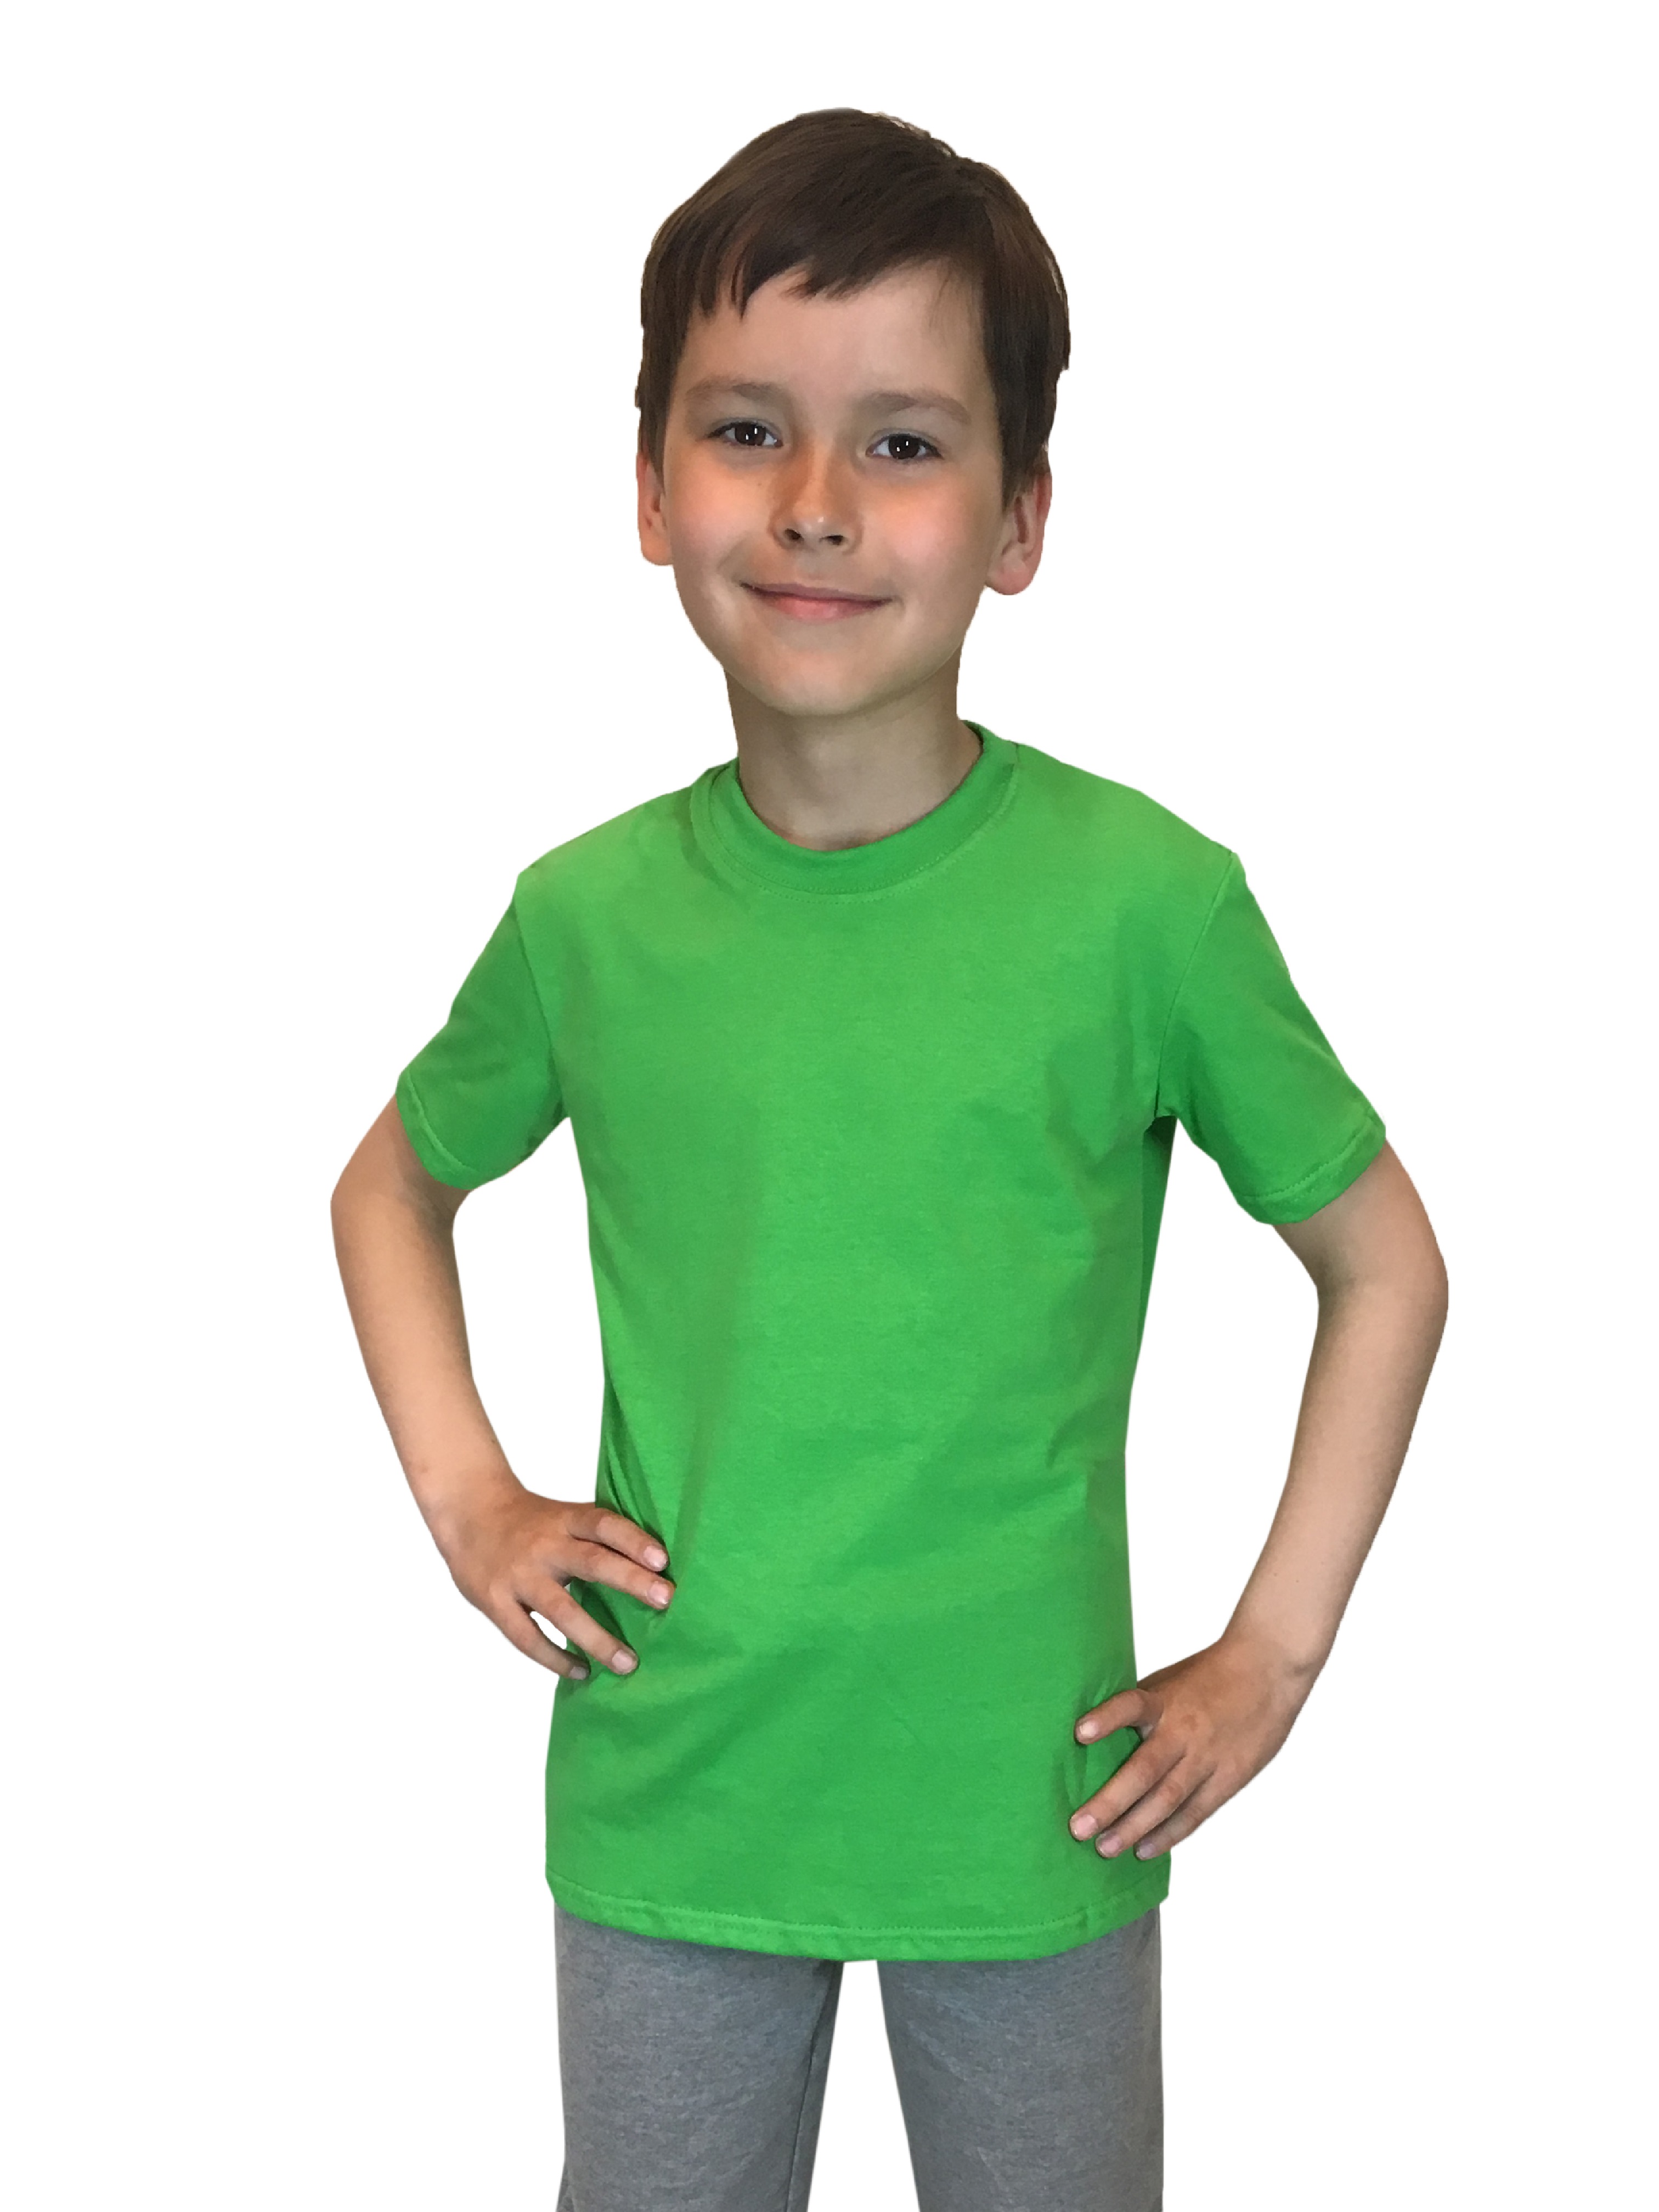 Футболка детская Детрик, зеленый размер 152, Ф-1-71